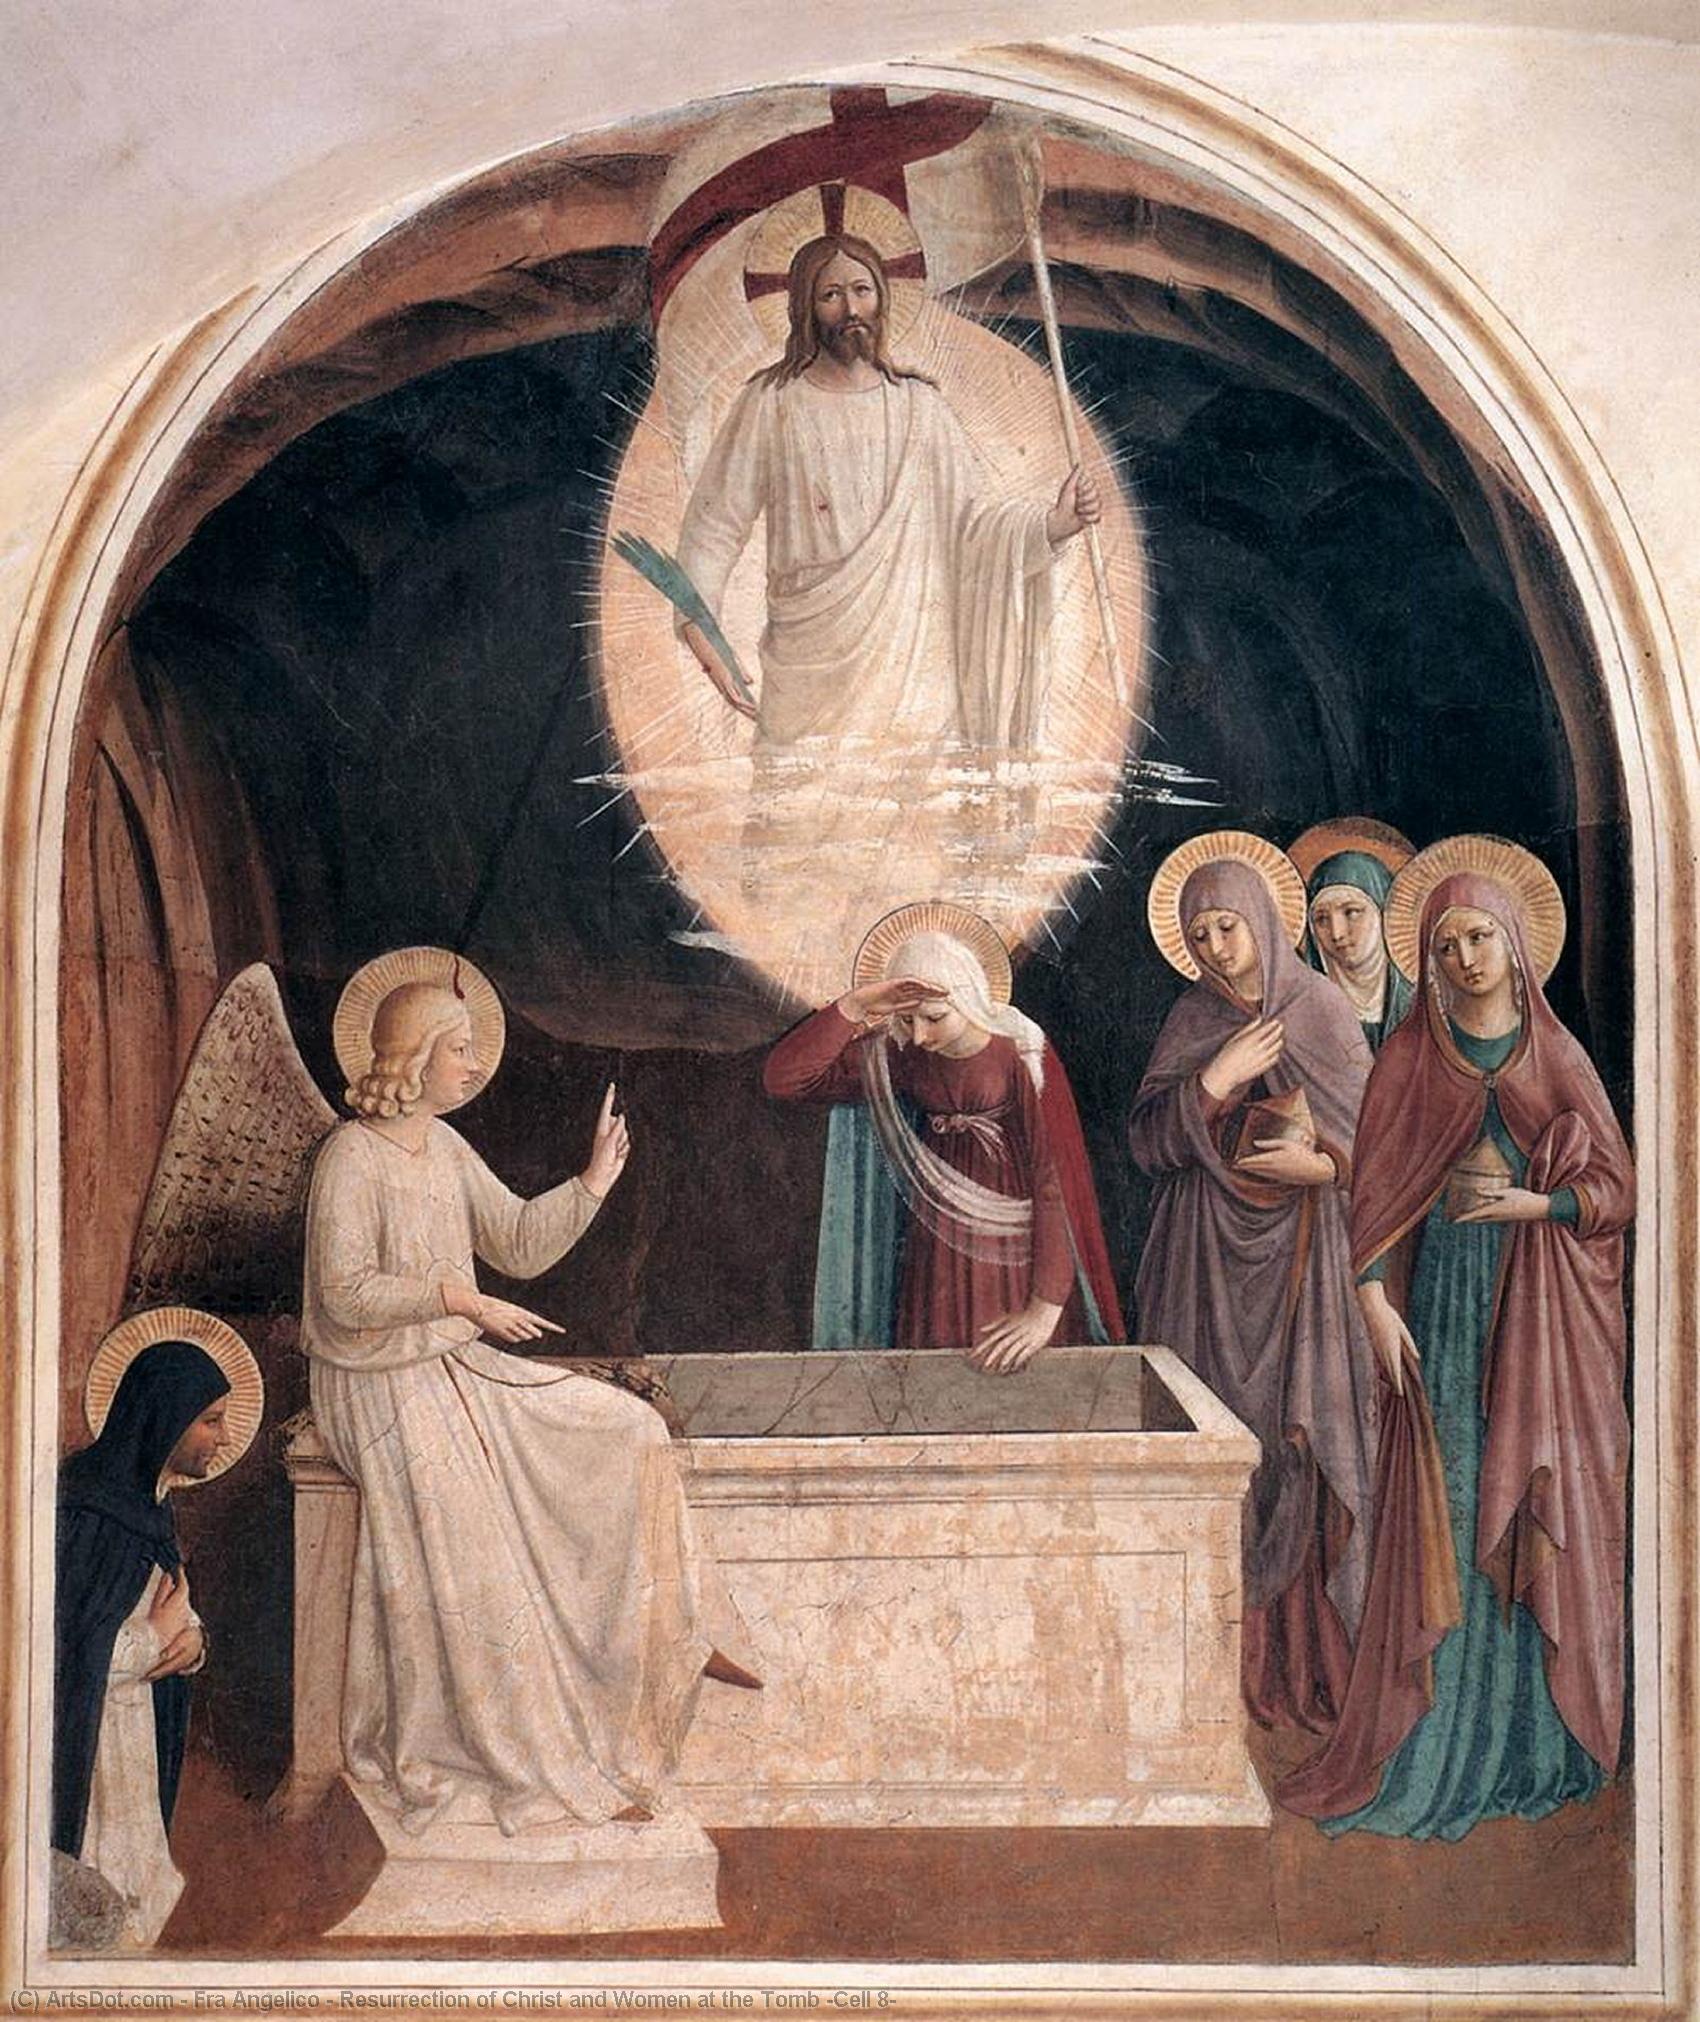 WikiOO.org - Enciklopedija likovnih umjetnosti - Slikarstvo, umjetnička djela Fra Angelico - Resurrection of Christ and Women at the Tomb (Cell 8)